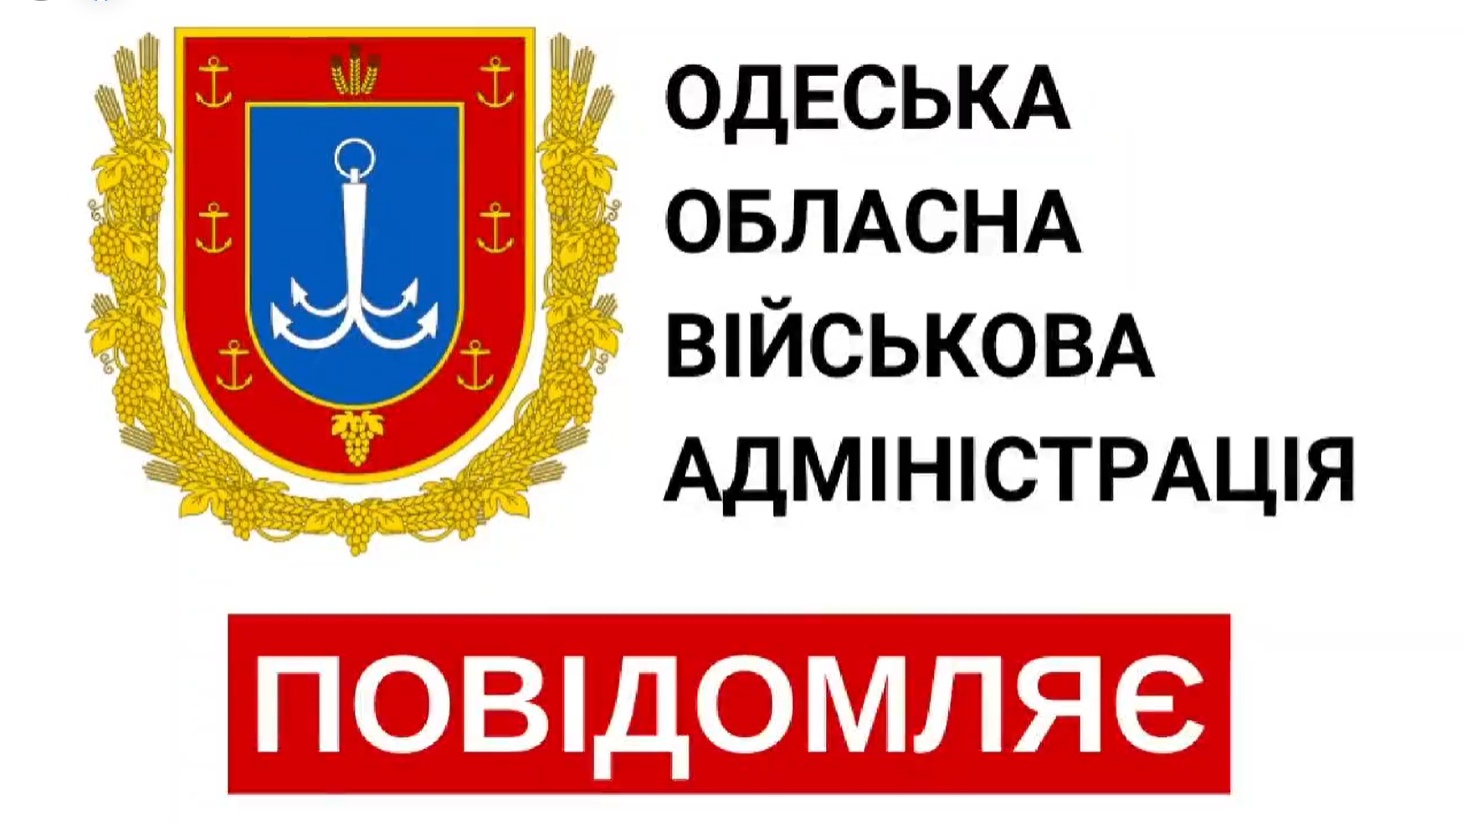 Будьте обережні: на Одещині поширюється фейковий лист нібито від ОВА (фото) «фото»